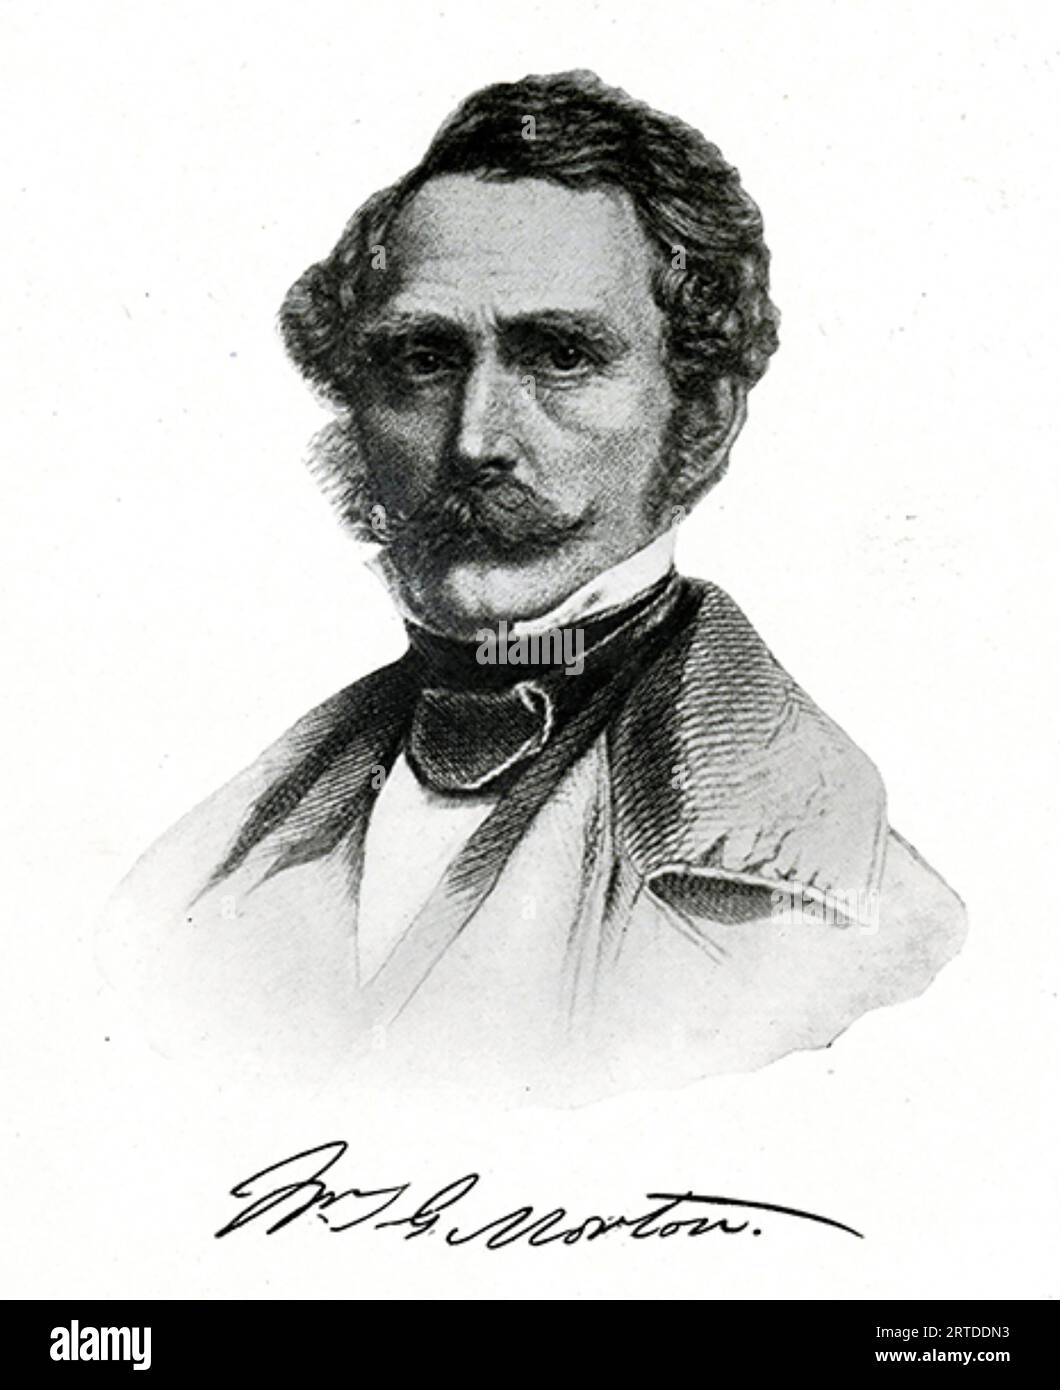 WILLIAM T. G. MORTON (1819-1868) amerikanischer Arzt und Zahnarzt, der erstmals öffentlich die Verwendung von Äther als Anästhetikum demonstrierte Stockfoto